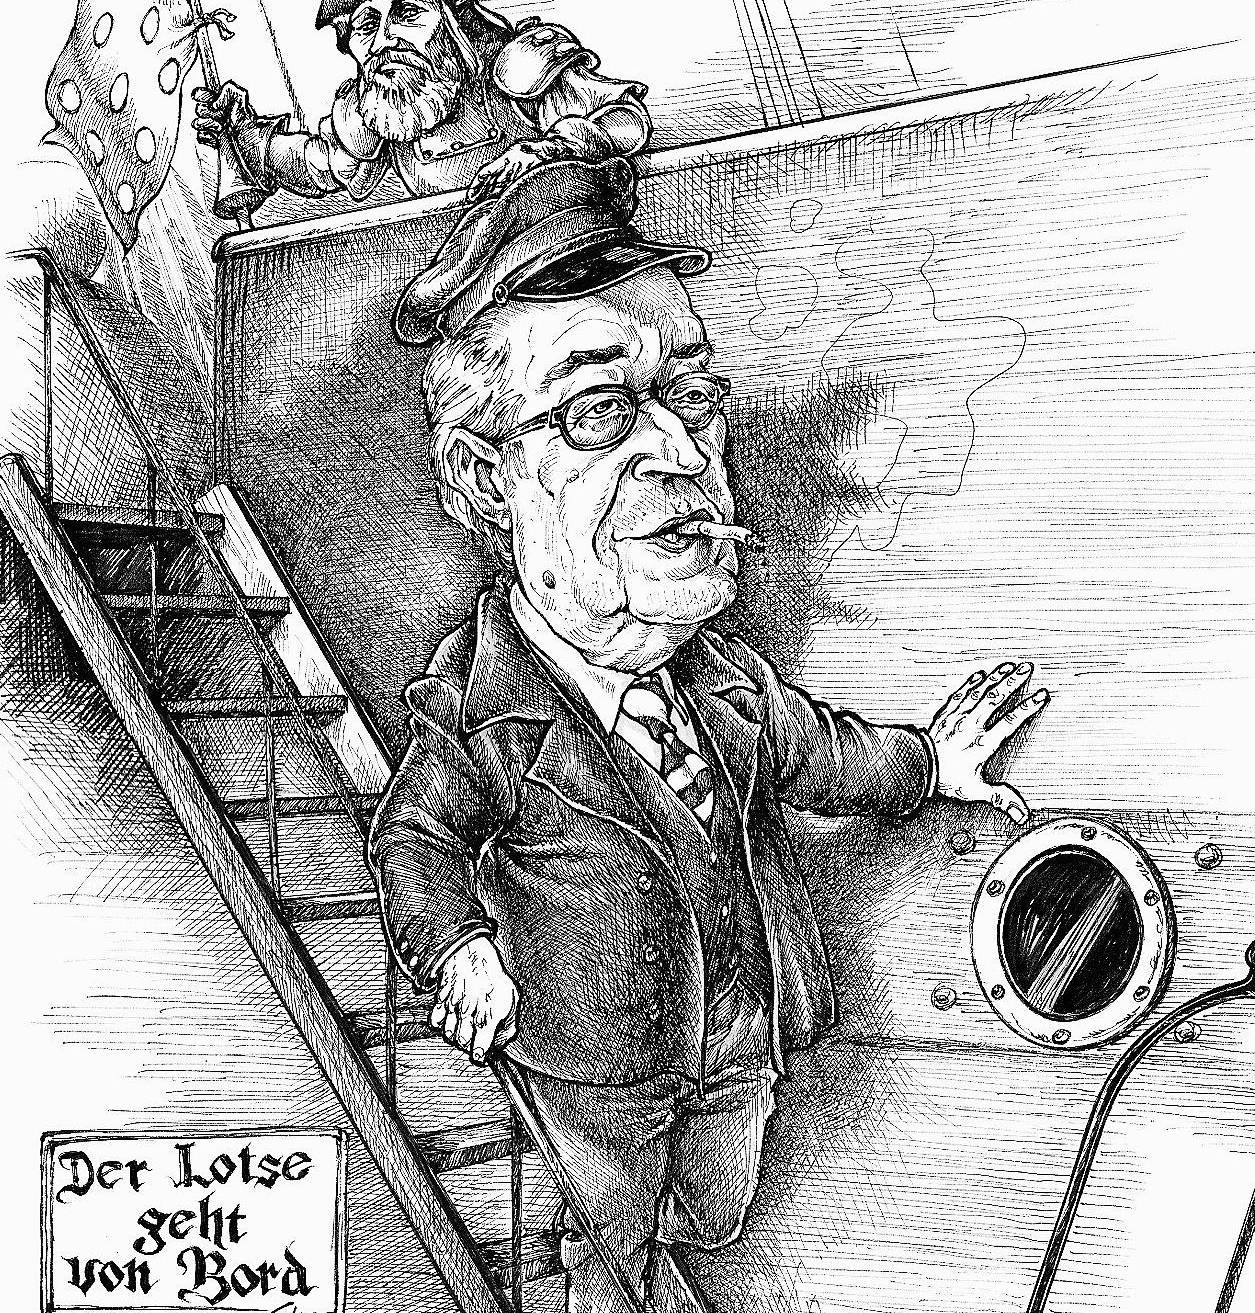  Der Fraktionschef der Linken, Roland Sperling, hat dem Stadt-Kurier und Bürgermeister Herbert Napp eine Karikatur geschenkt. 